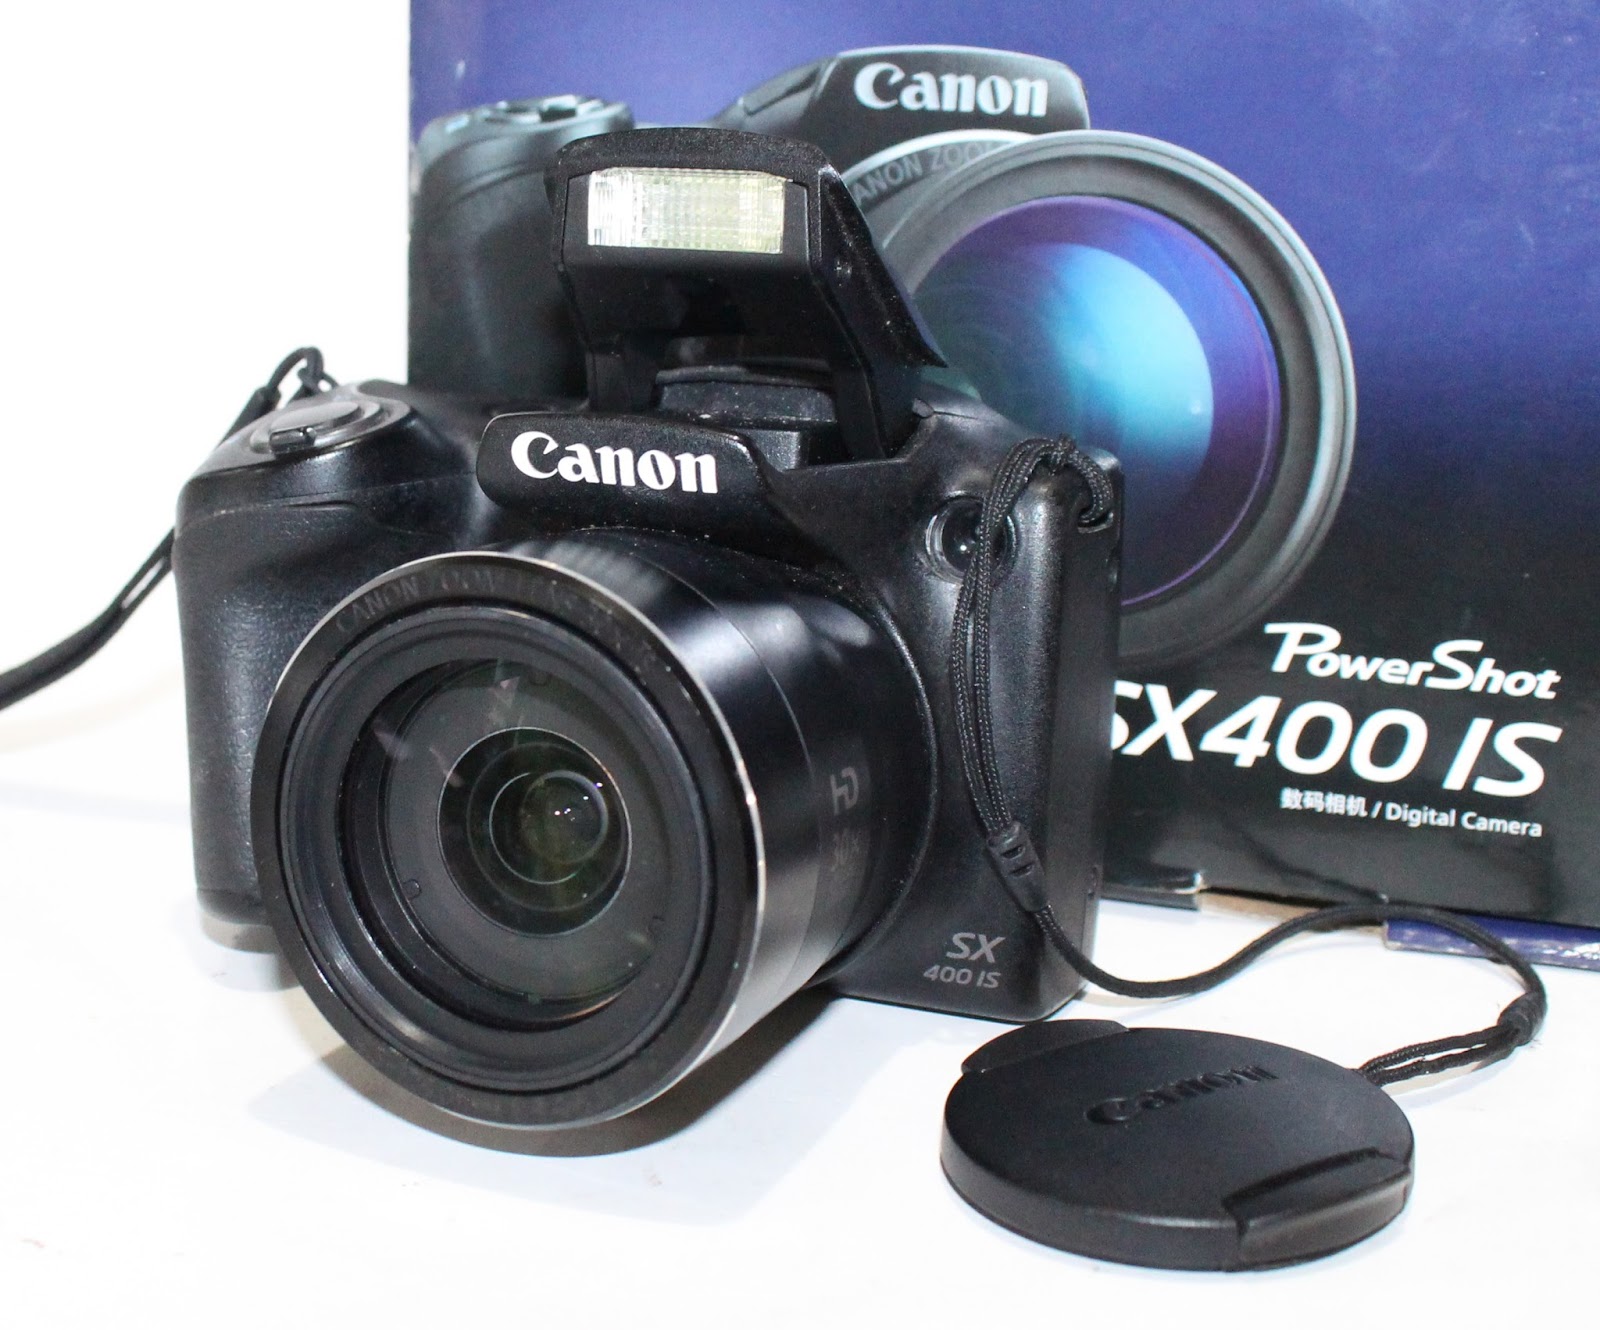 Kamera canon bekas di bali - jual beli laptop bekas kamera 